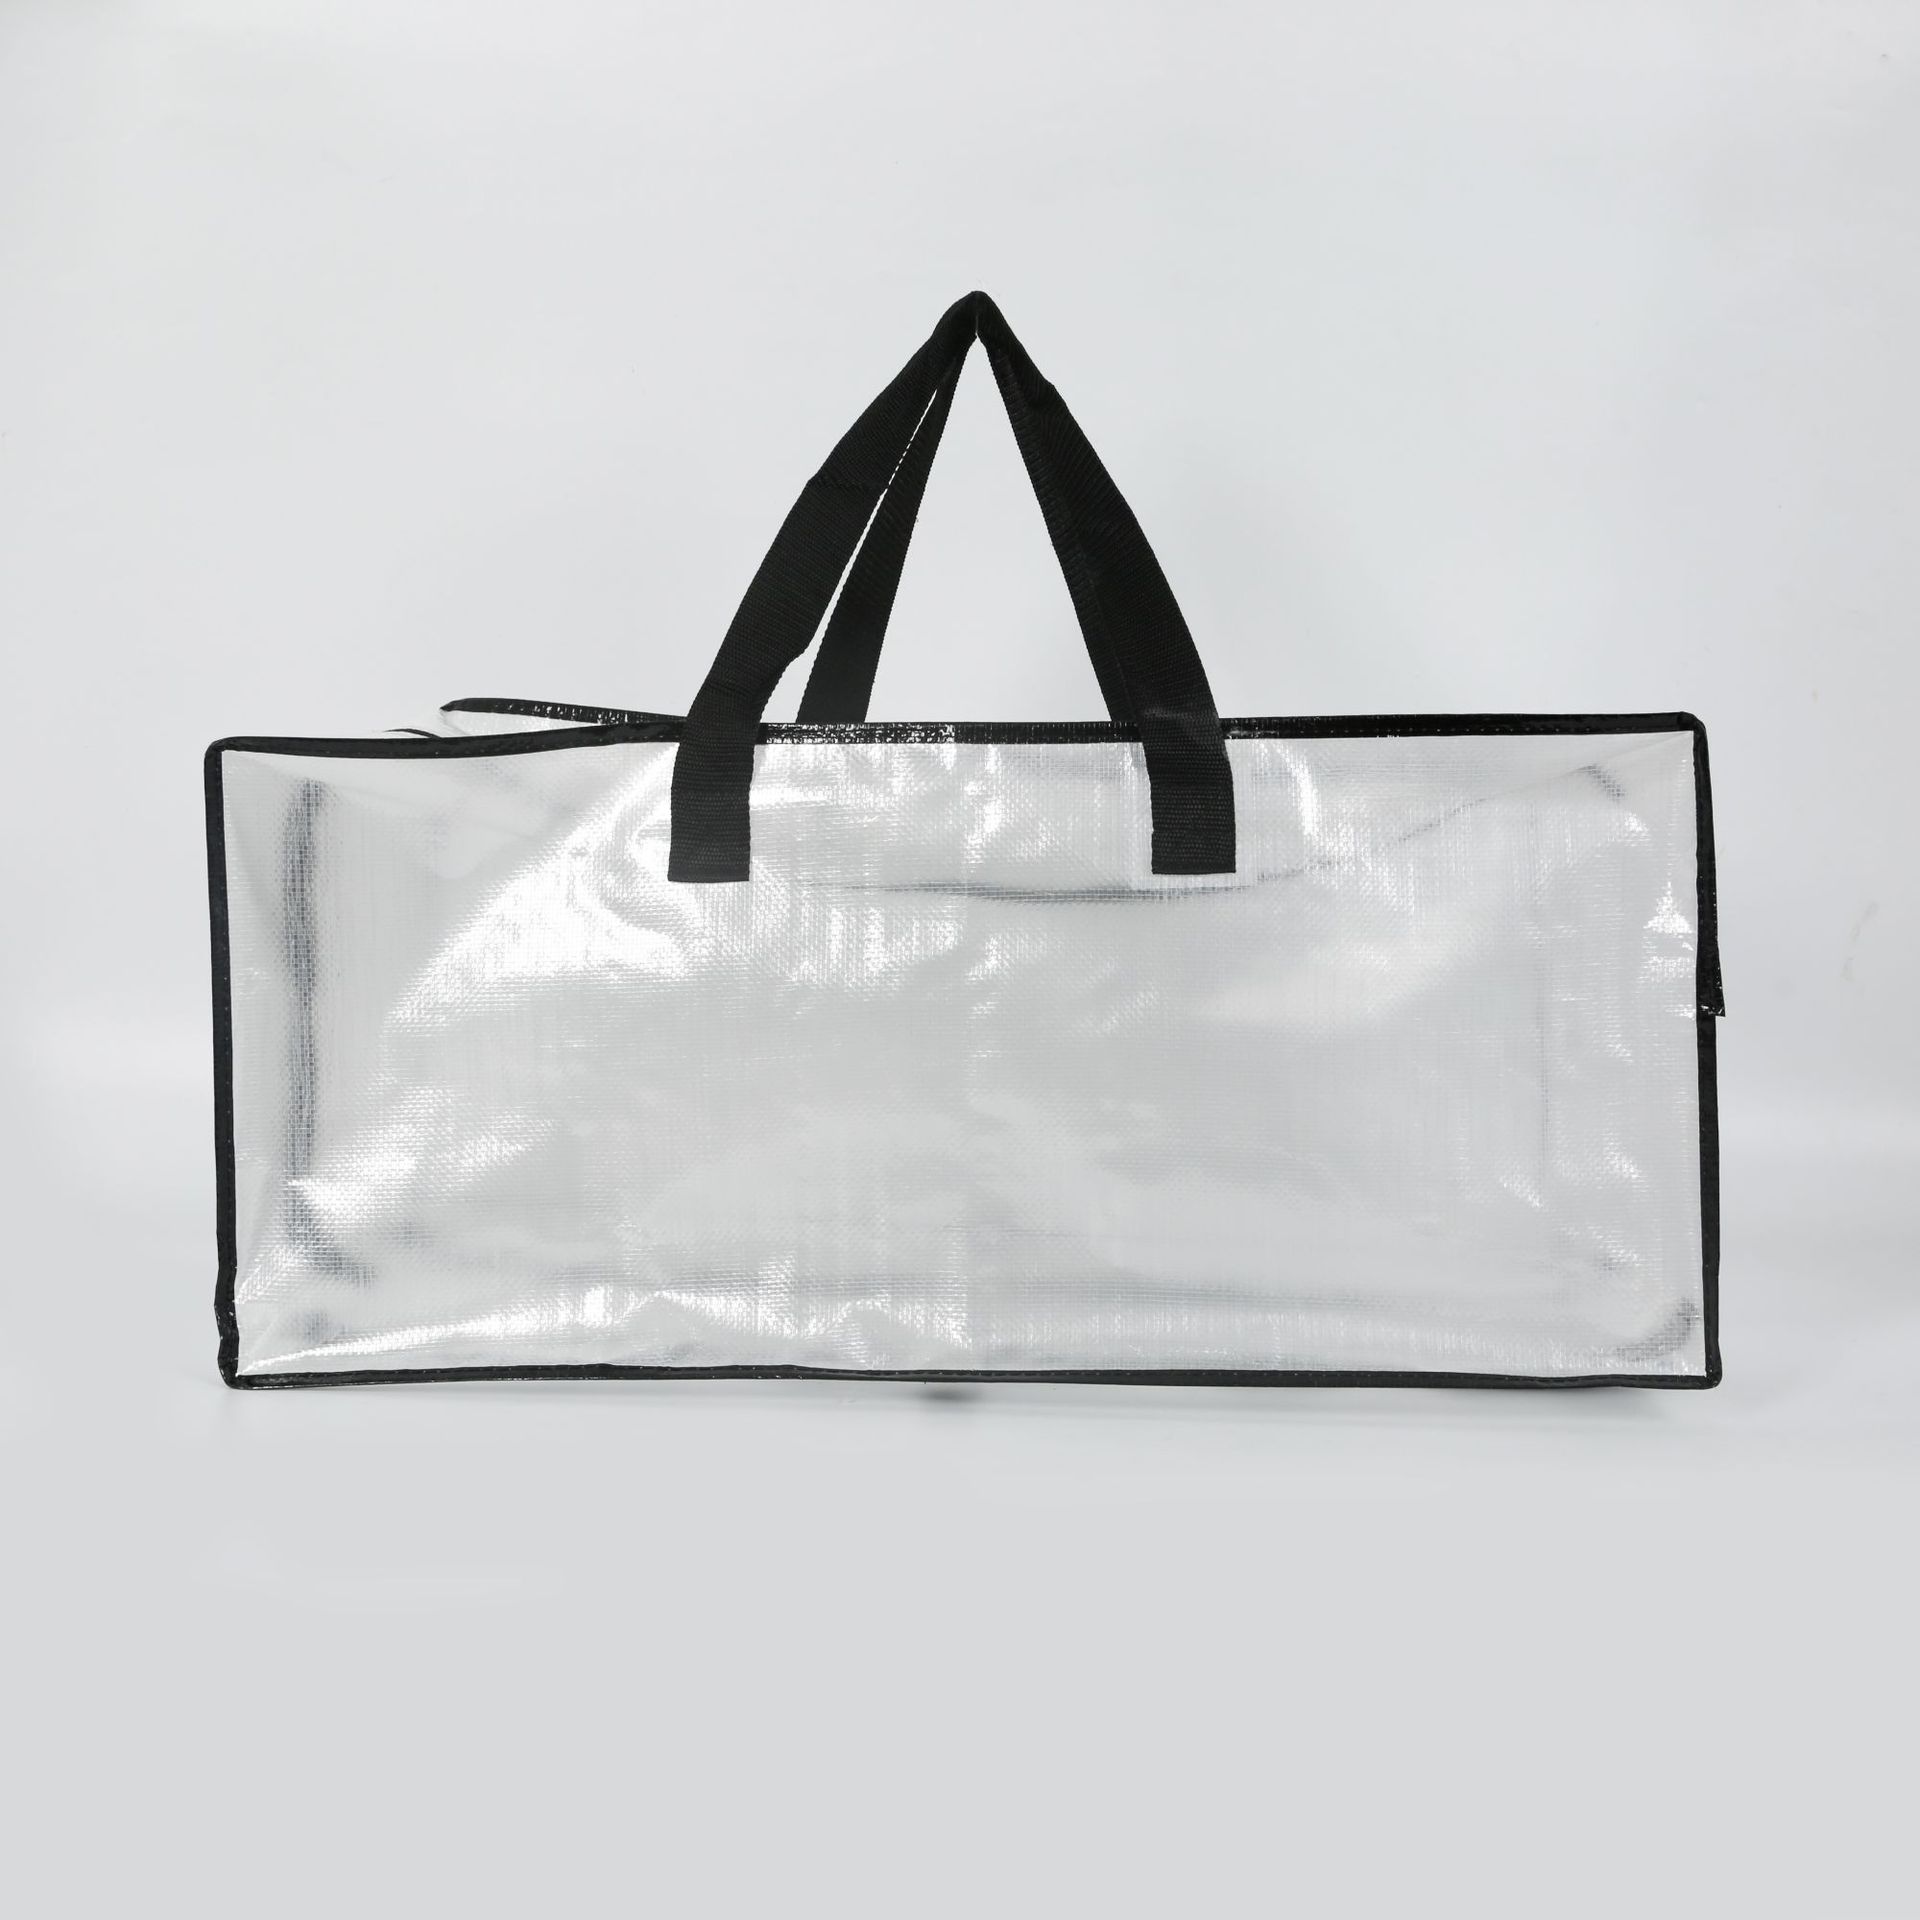 ClearSpace Bolsas de mudanza resistentes o bolsa de almacenamiento, cajas  grandes para mudanzas con correas de mochila, cremalleras y asas, perfectas